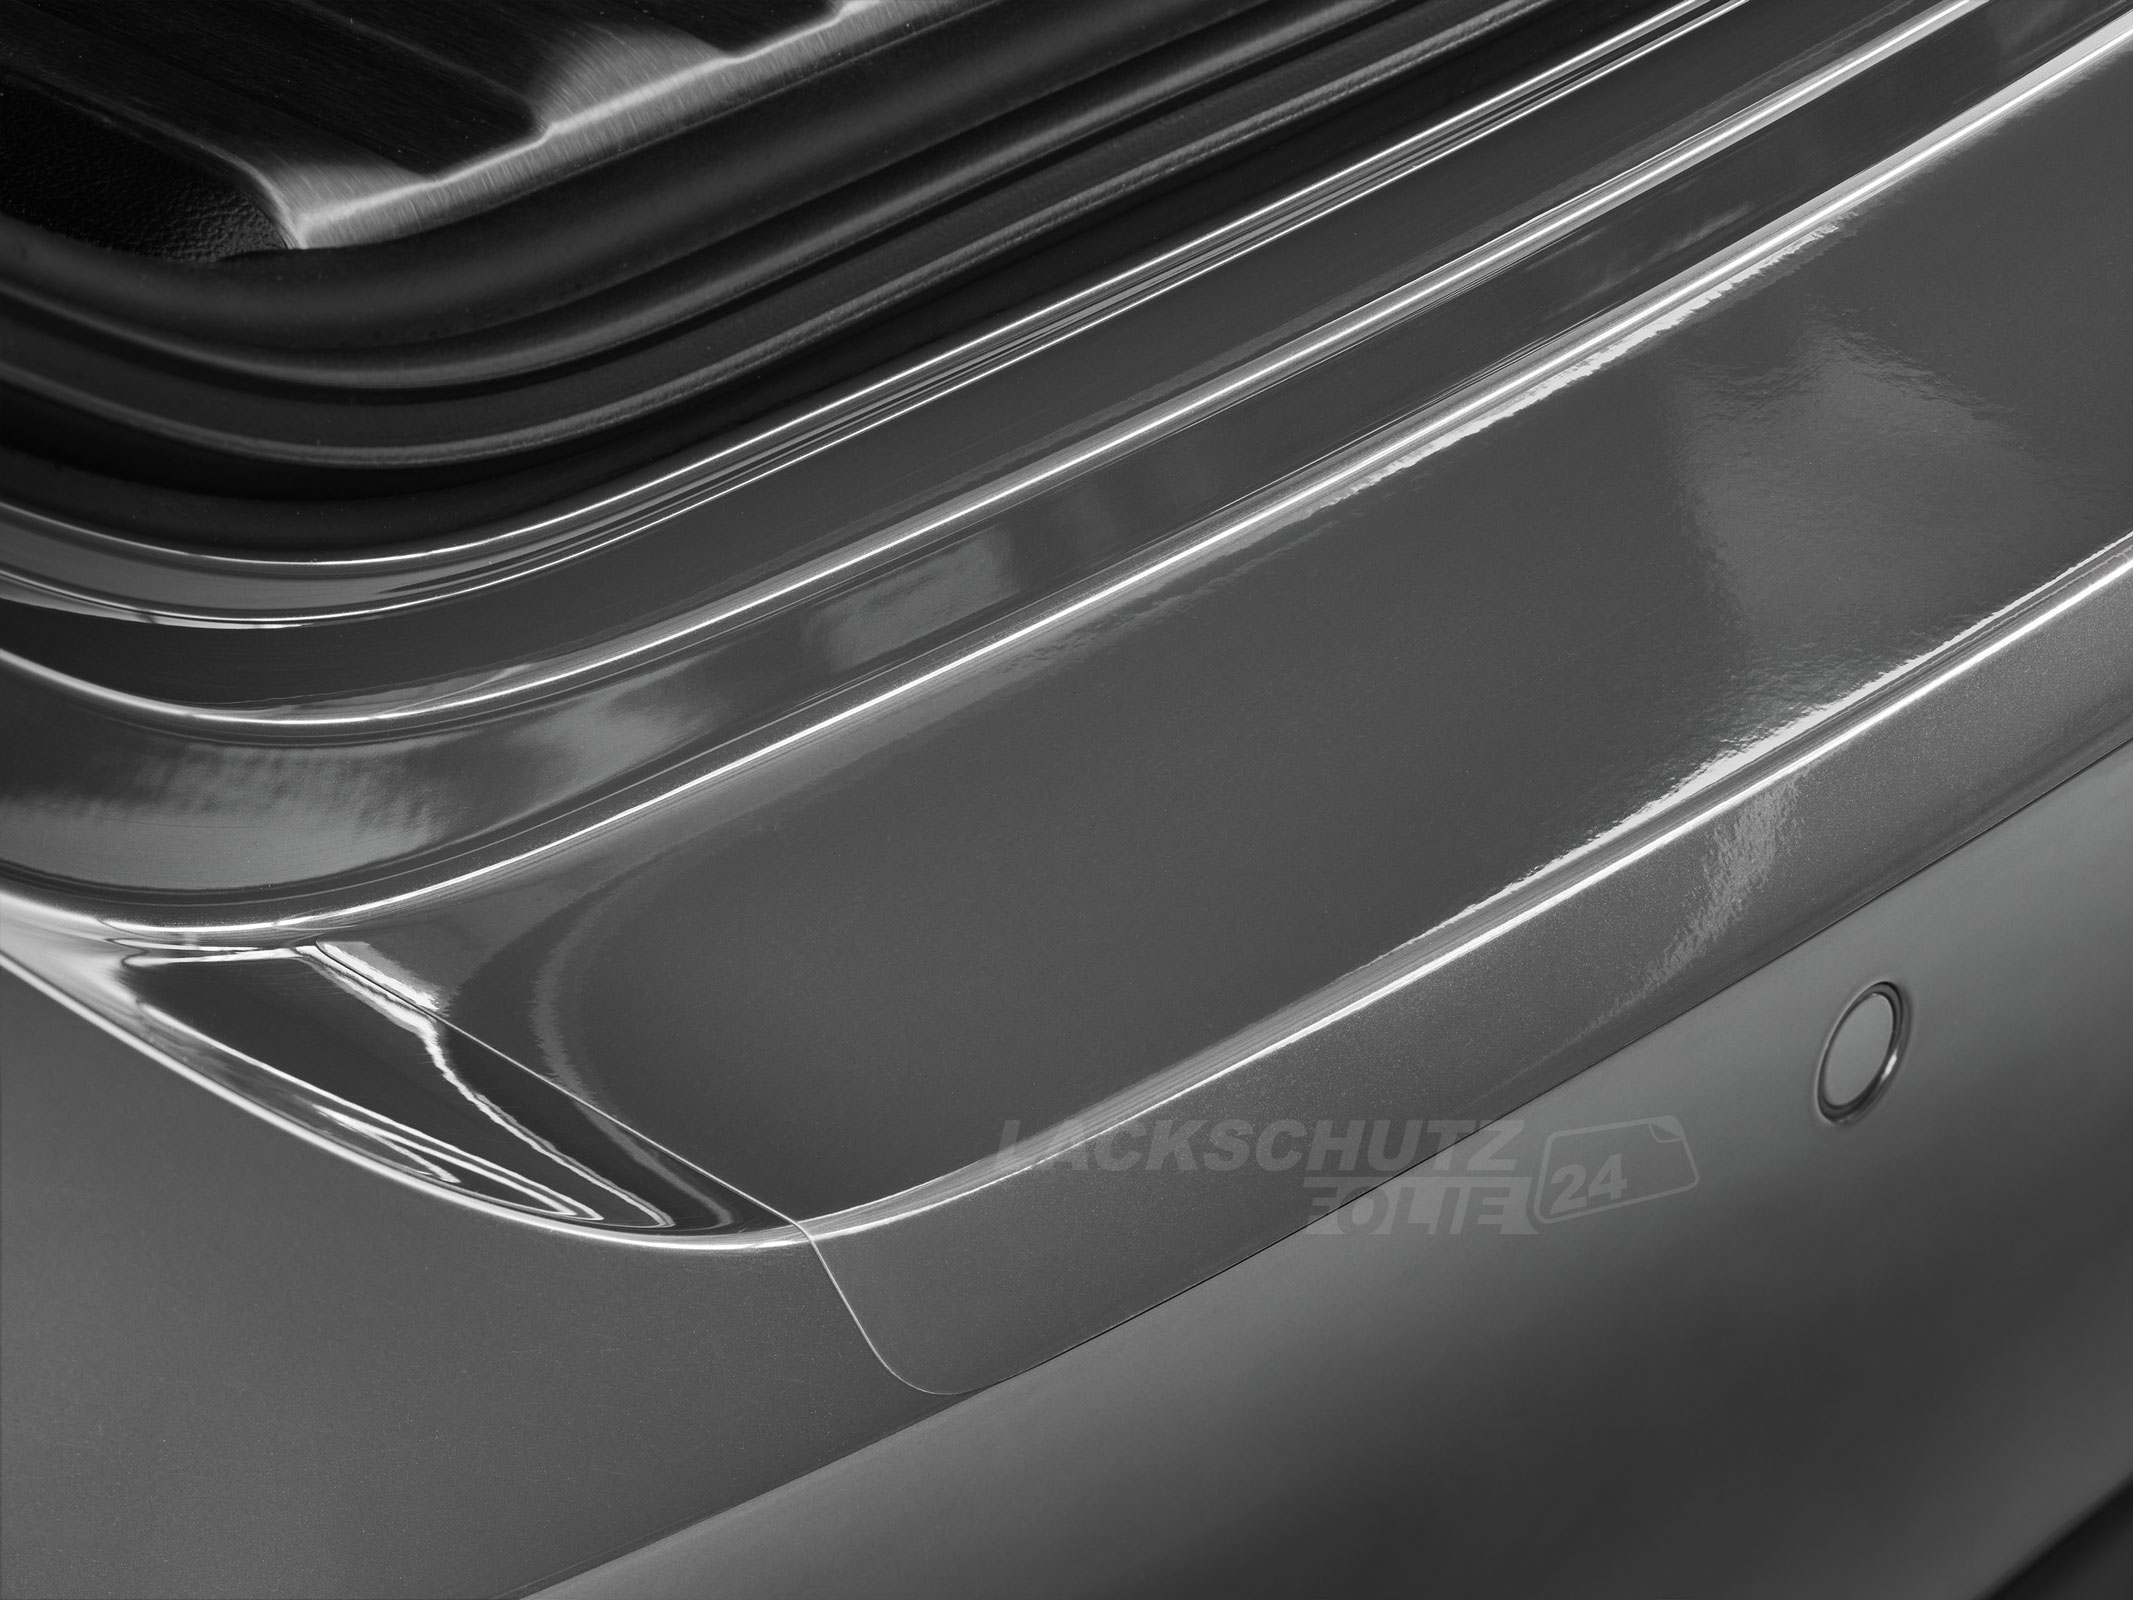 Ladekantenschutzfolie - Transparent Glatt Hochglänzend 240 µm stark für Mitsubishi Galant Kombi Typ EA0, BJ 1996-2003